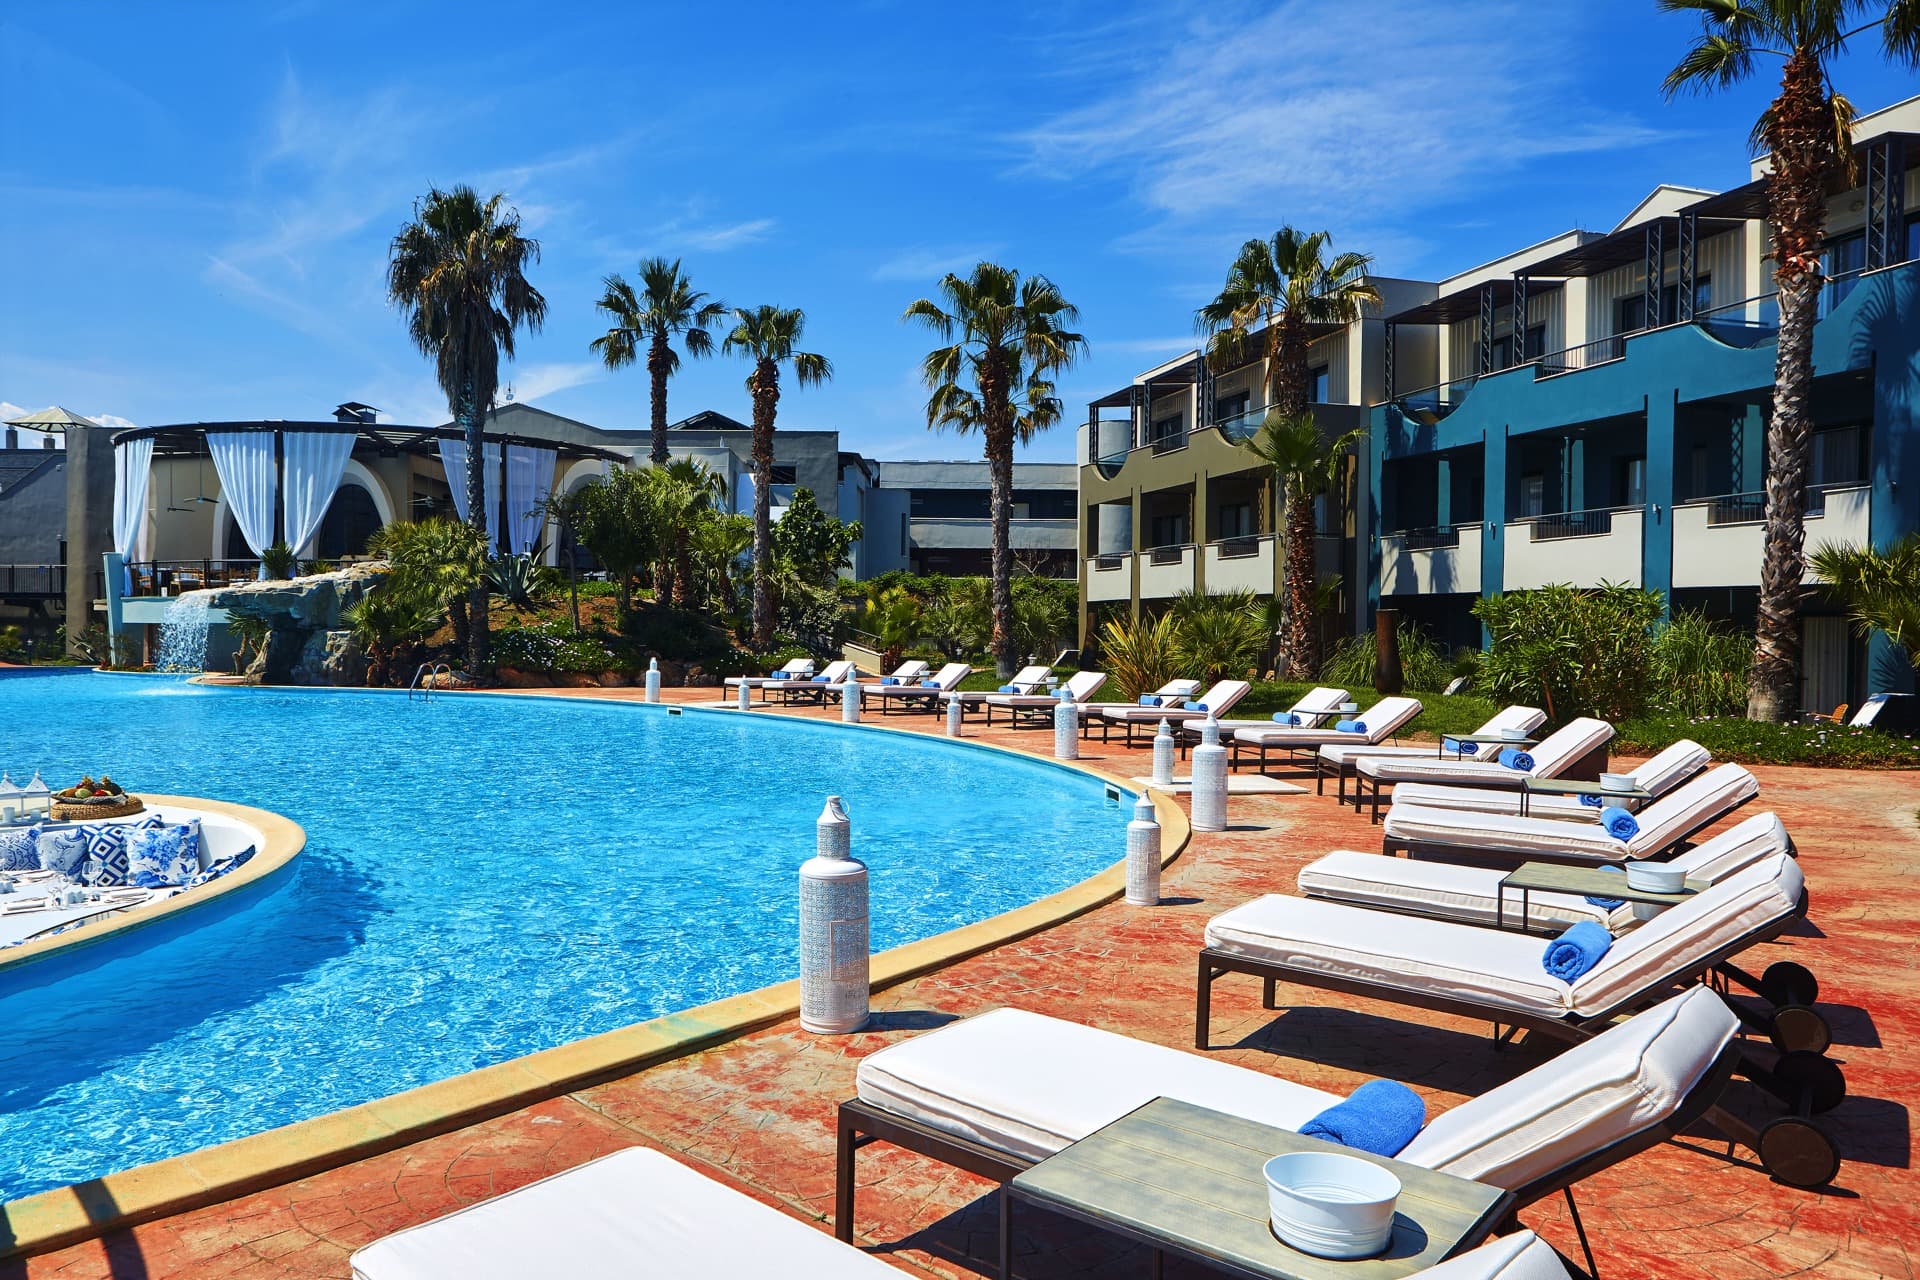 Hotel Ilio Mare pool 1.jpg